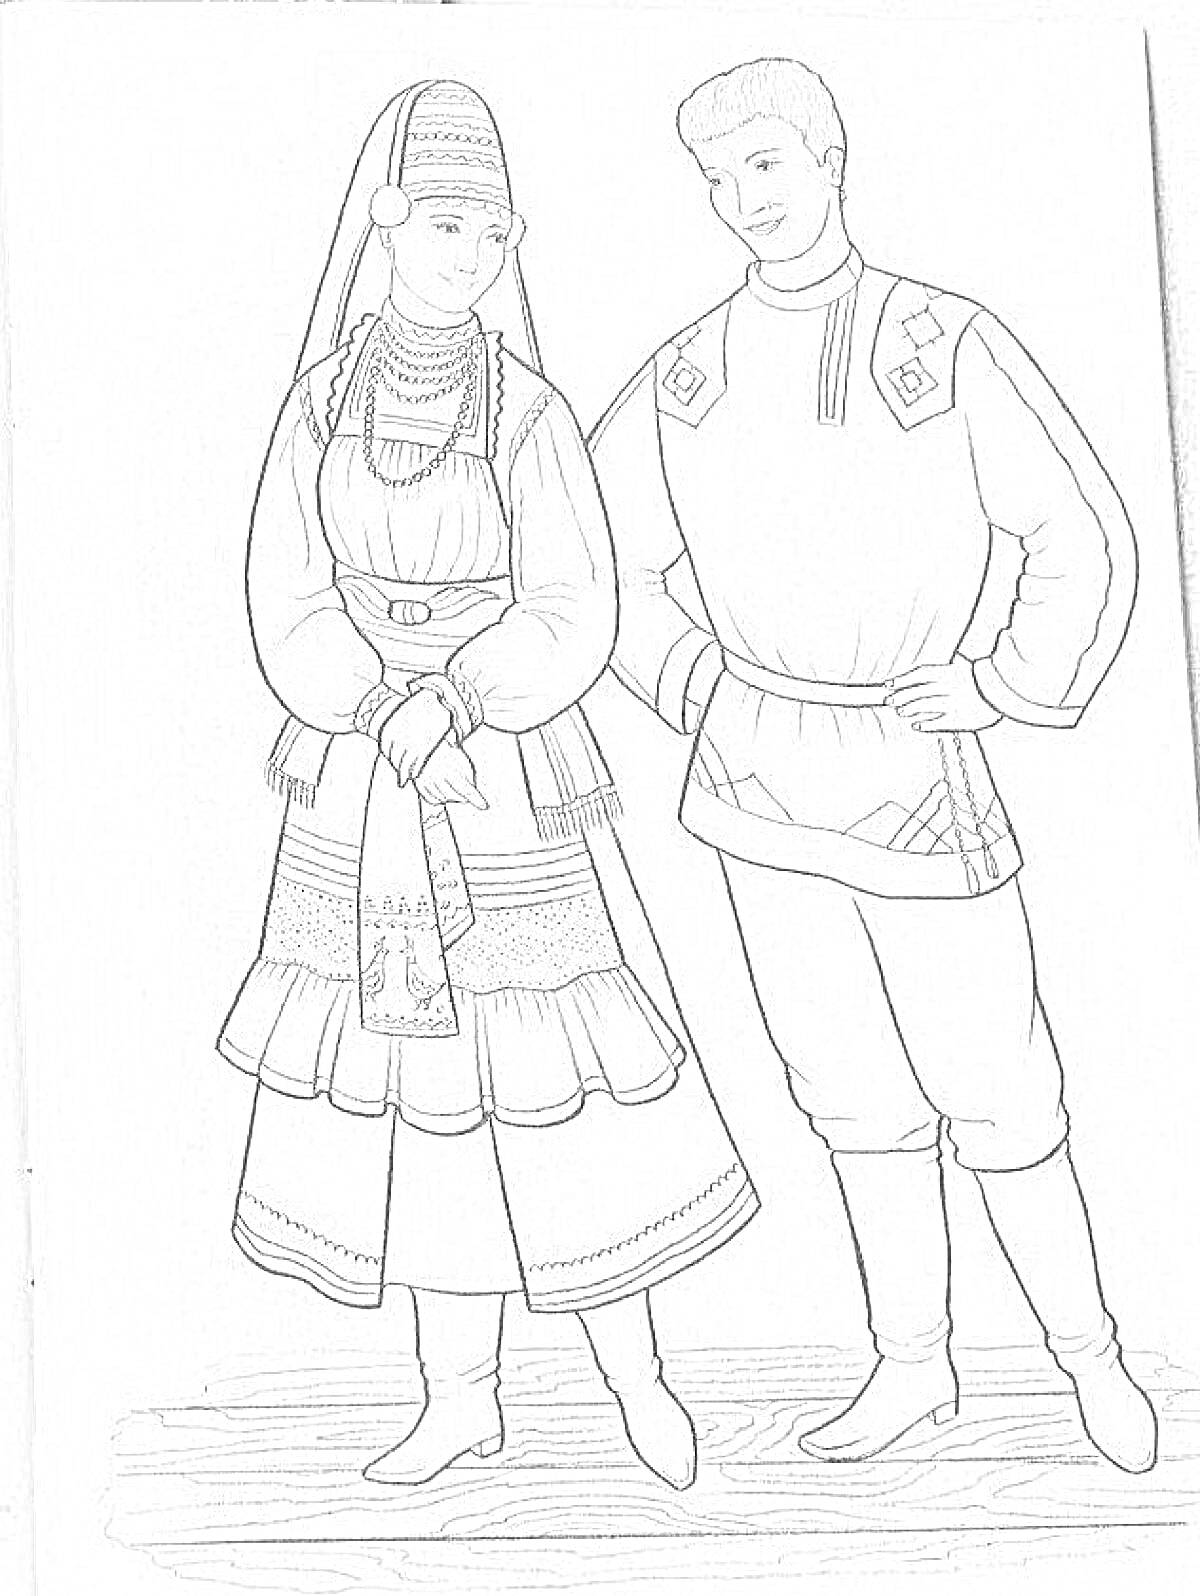 Чувашский национальный костюм мужской и женский, включая головной убор, фартук, рубаху, пояс, юбку, штаны и обувь.